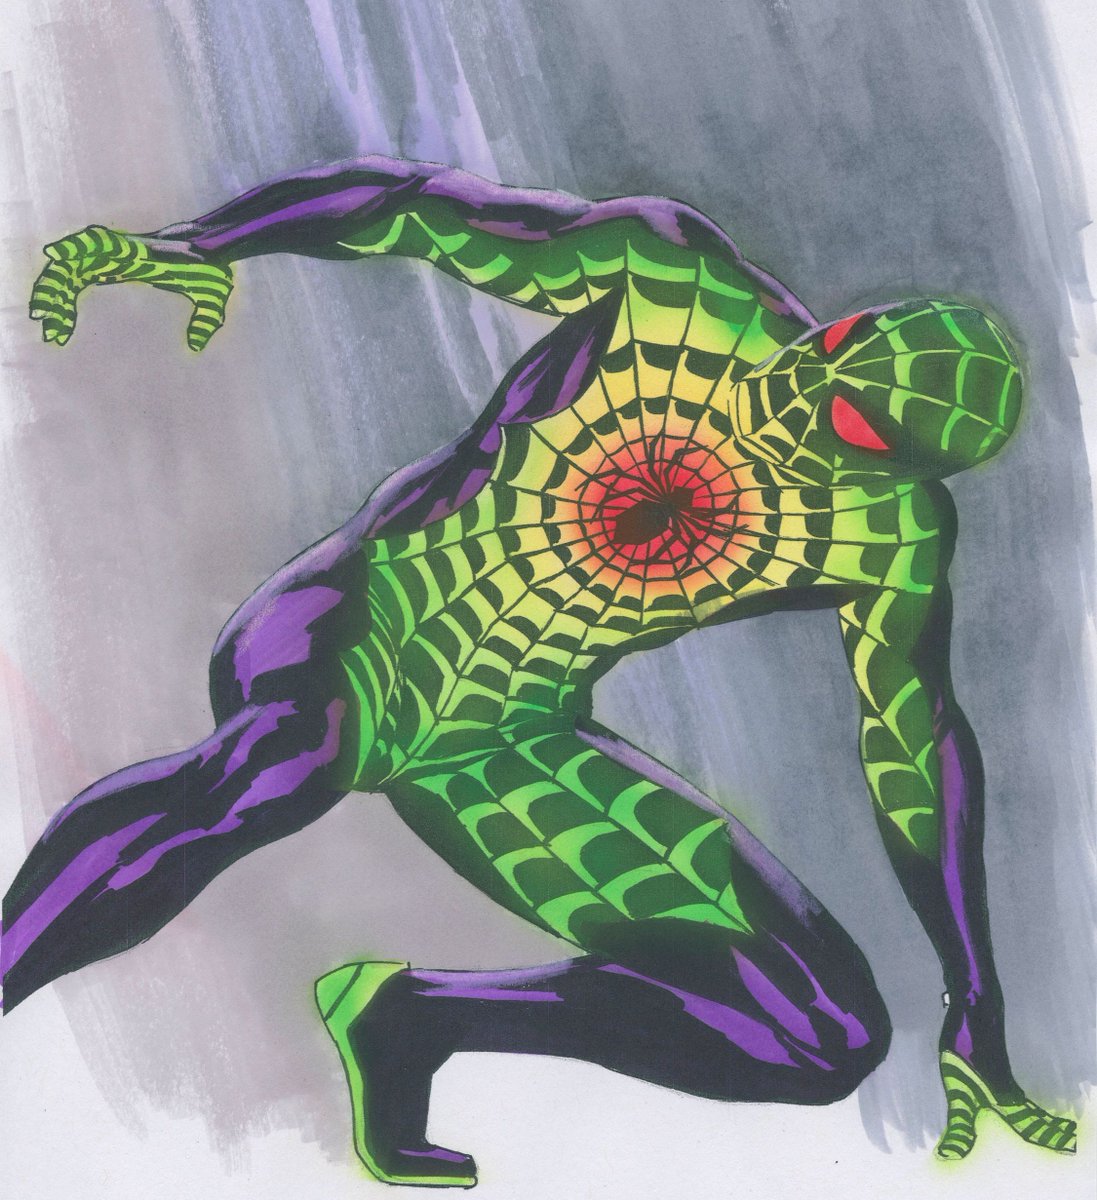 Spider-Man (Playstation Design)   #spiderman #ps4 #videogameart #comicartist